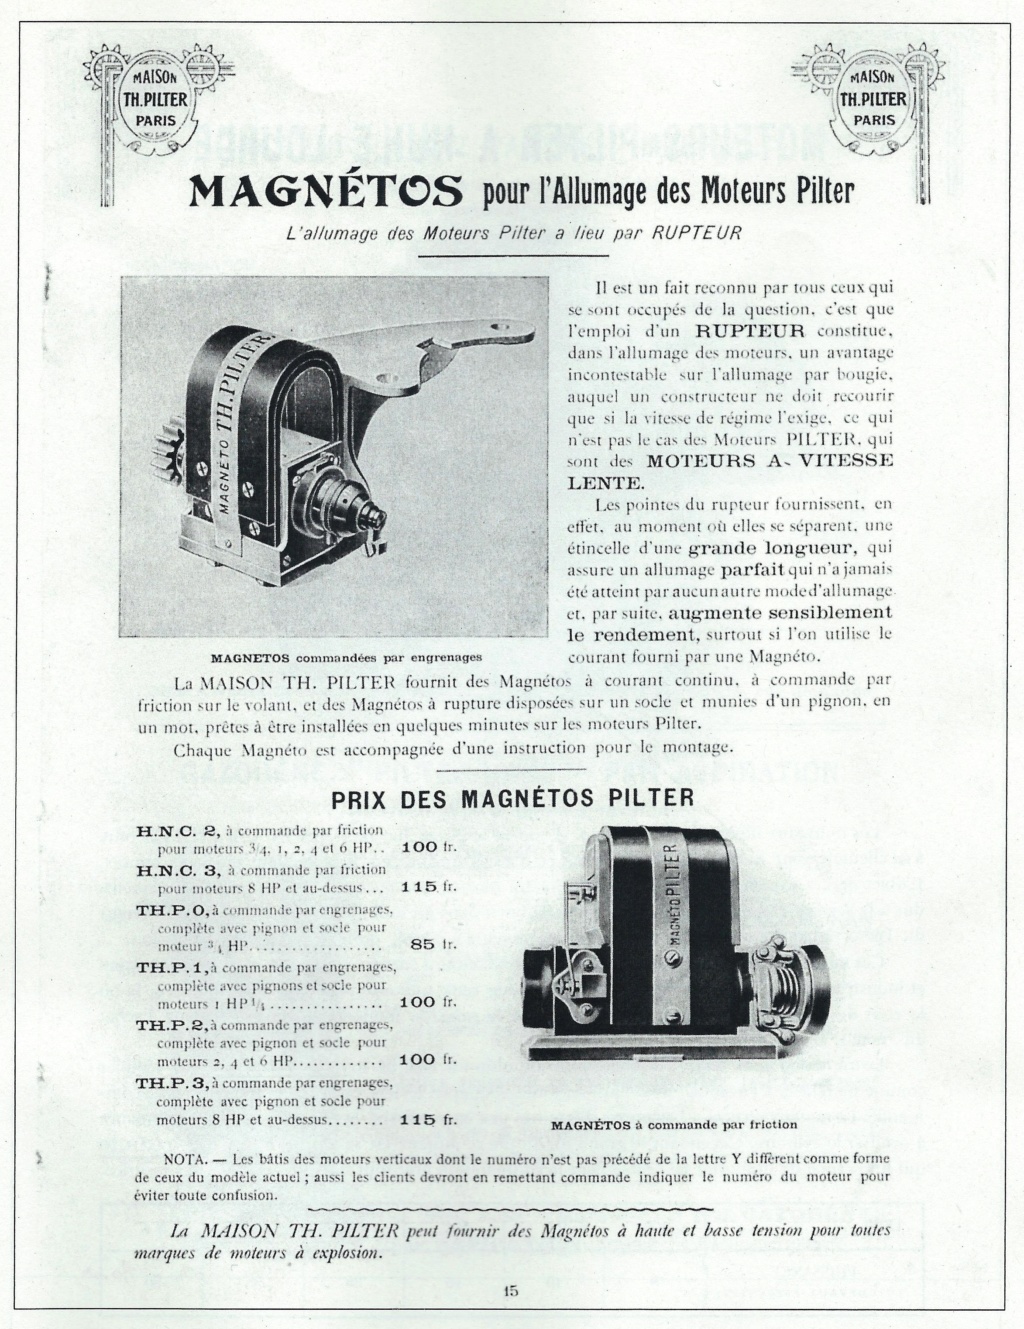 moteur - Le Moteur Pilter (Stover) Magnzo10